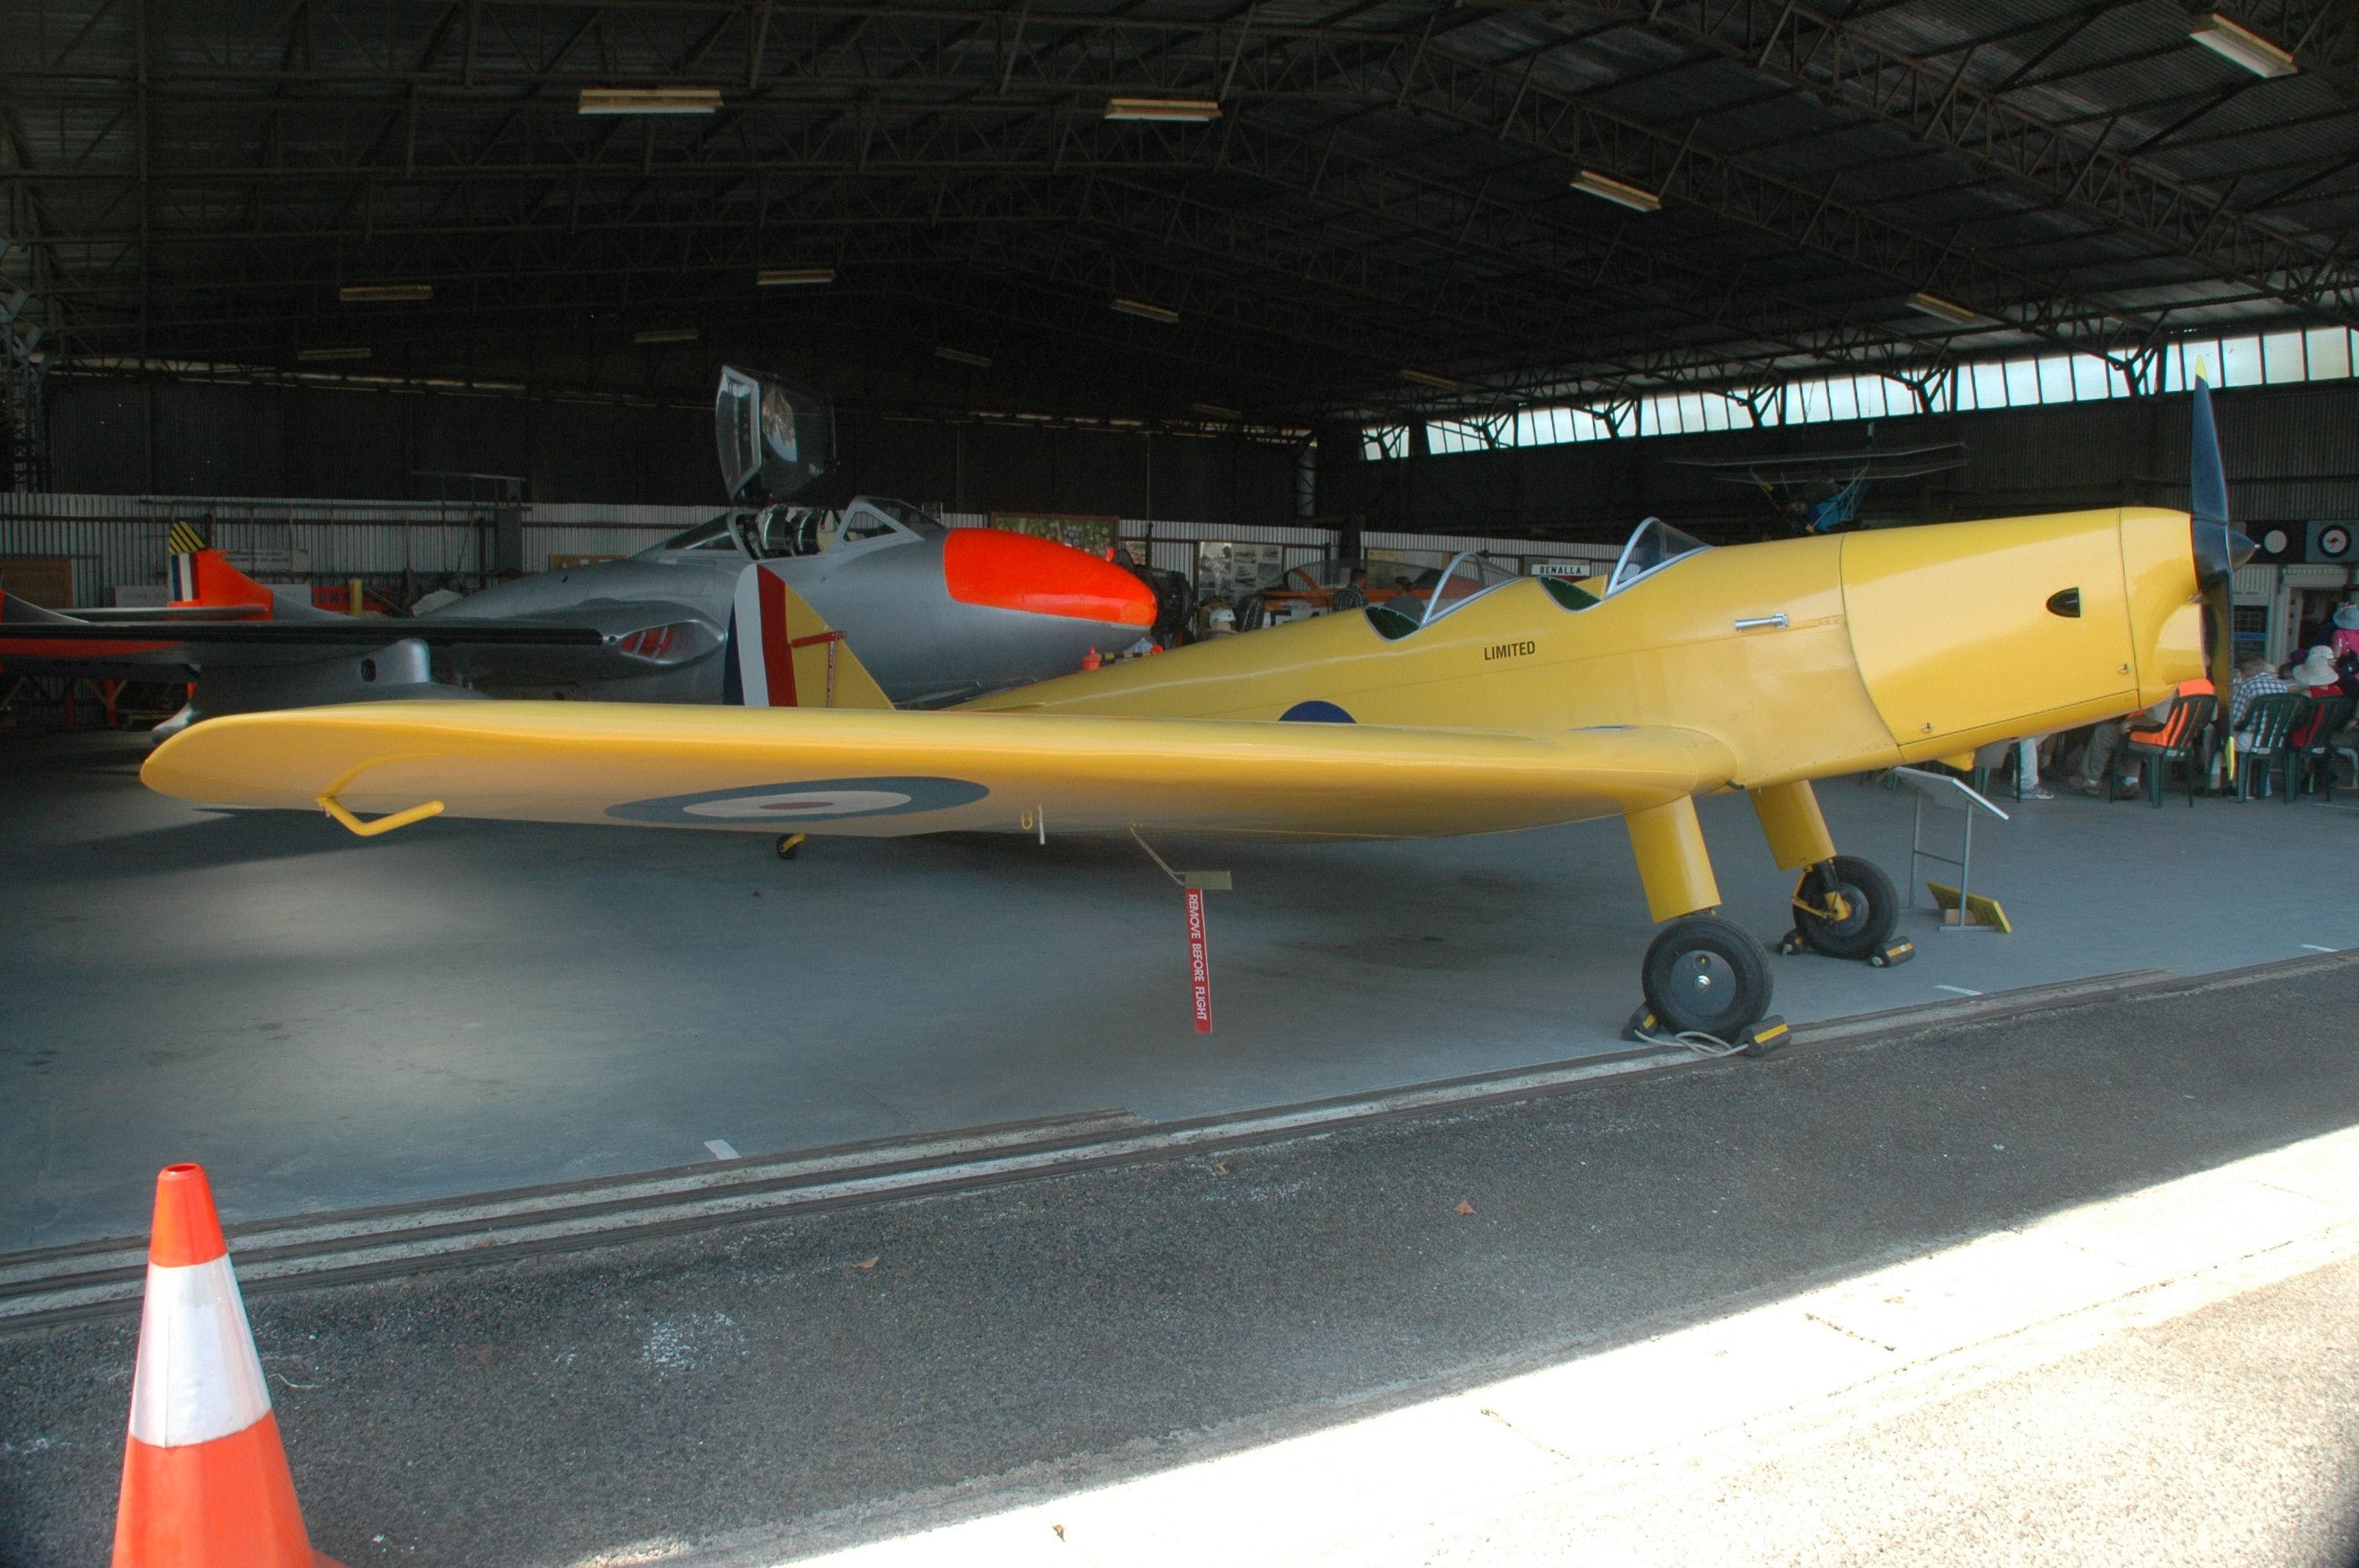 Benalla Aviation Museum - Carnarvon Accommodation